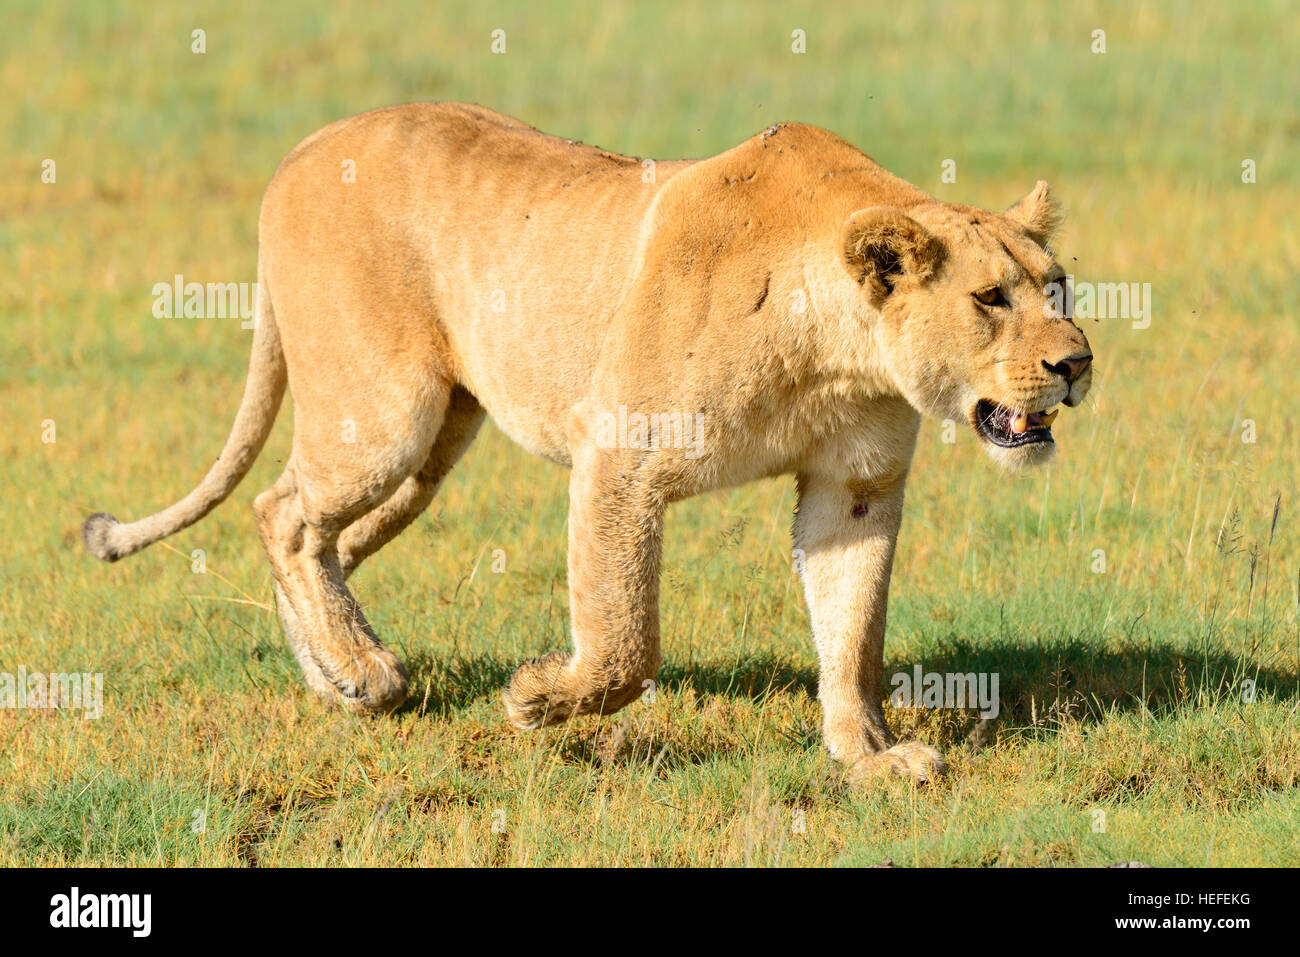 A wild female adult lion (Panthera leo) lioness prowls on savannah savanna marshland near Ndutu, Tanzania. Stock Photo